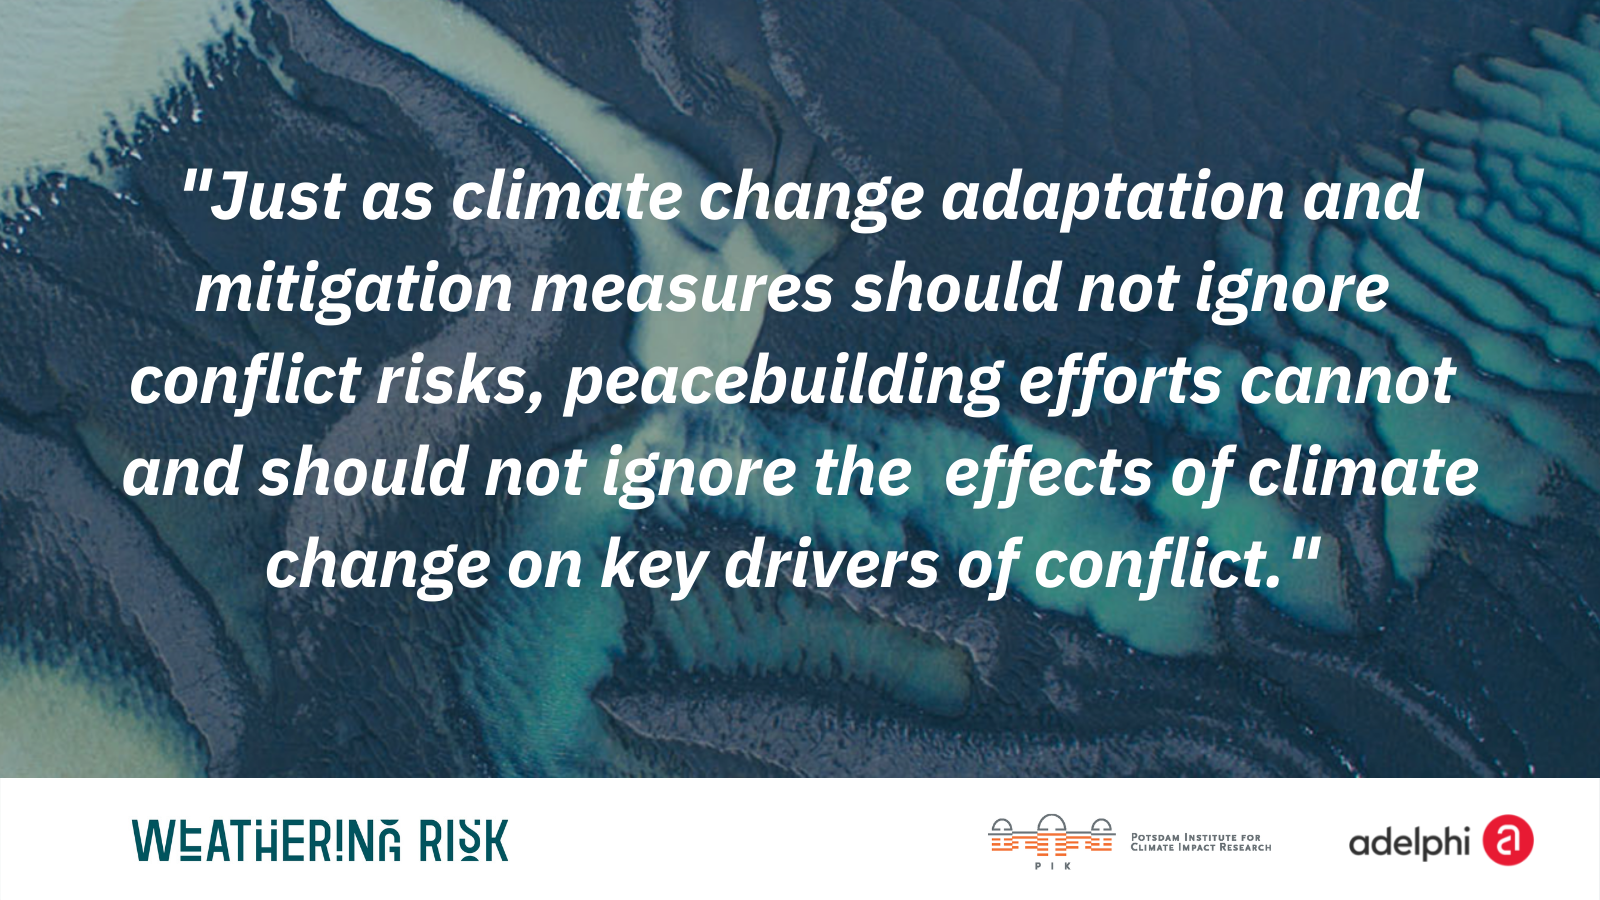 Erklärung von Expertinnen und Experten fordert die Anerkennung der Zusammenhänge zwischen Klimawandel und Konflikten